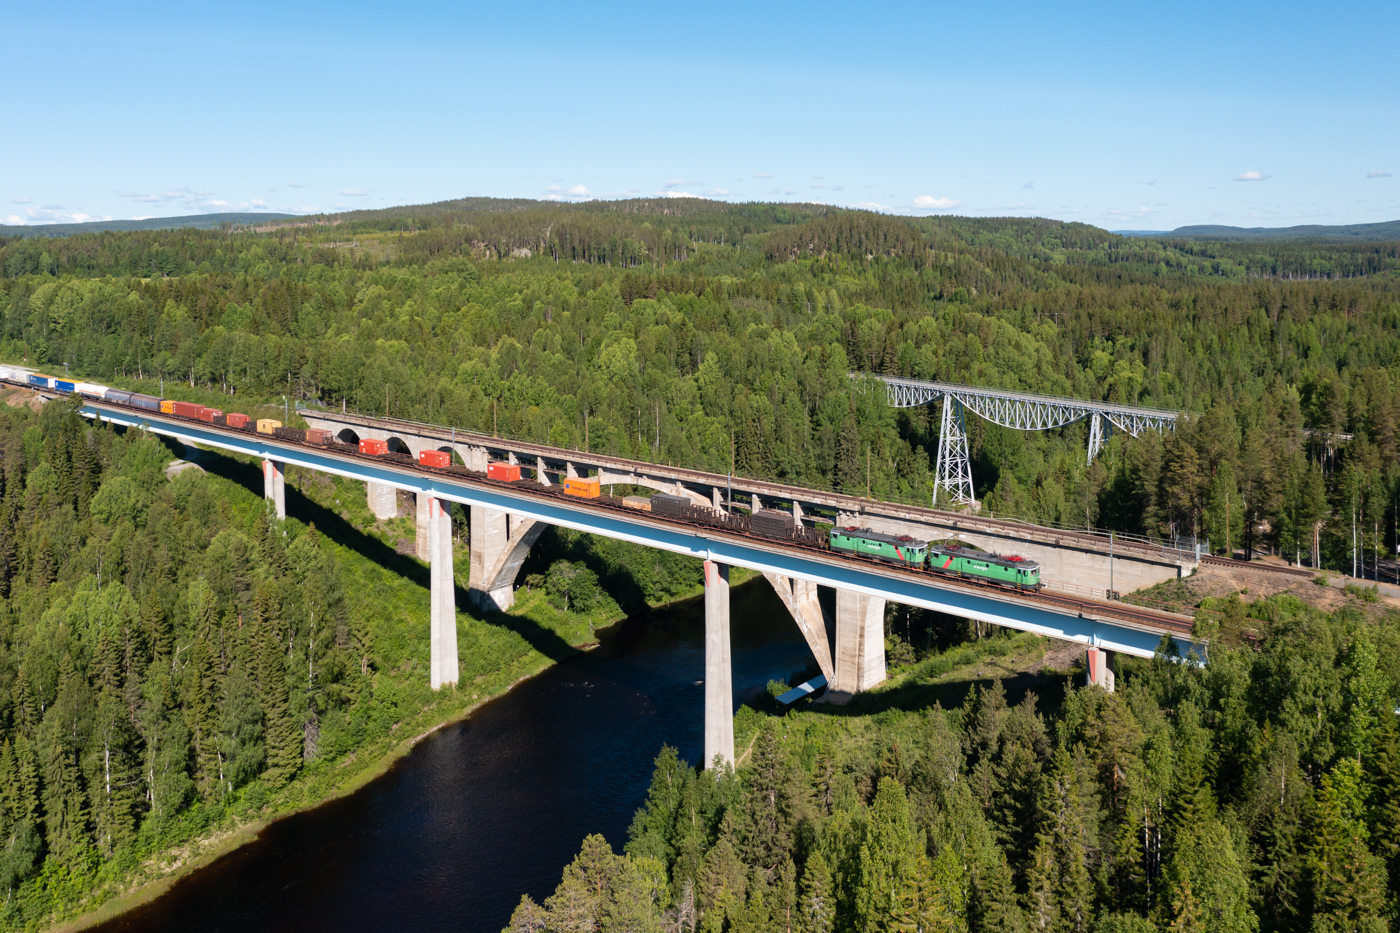 Kurz nach dem ARE nach Narvik folgt am 17.06.2022 mit rund 100 Minuten Verspätung der 4302 mit einer Doppeltraktion Green Cargo Rc4 über die Tallbergsbroarna bei Nyåker. Schön zu sehen sind die drei Brücken. Die hinterste und älteste Brücke ist die Straßenbrücke von 1891. Die mittlere Brücke ist die erste Eisenbahnbrücke und stammt aus dem Jahr 1919. Die vorderste Brücke ist die jüngste und hat 1994 die alte Eisenbahnbrücke ersetzt.